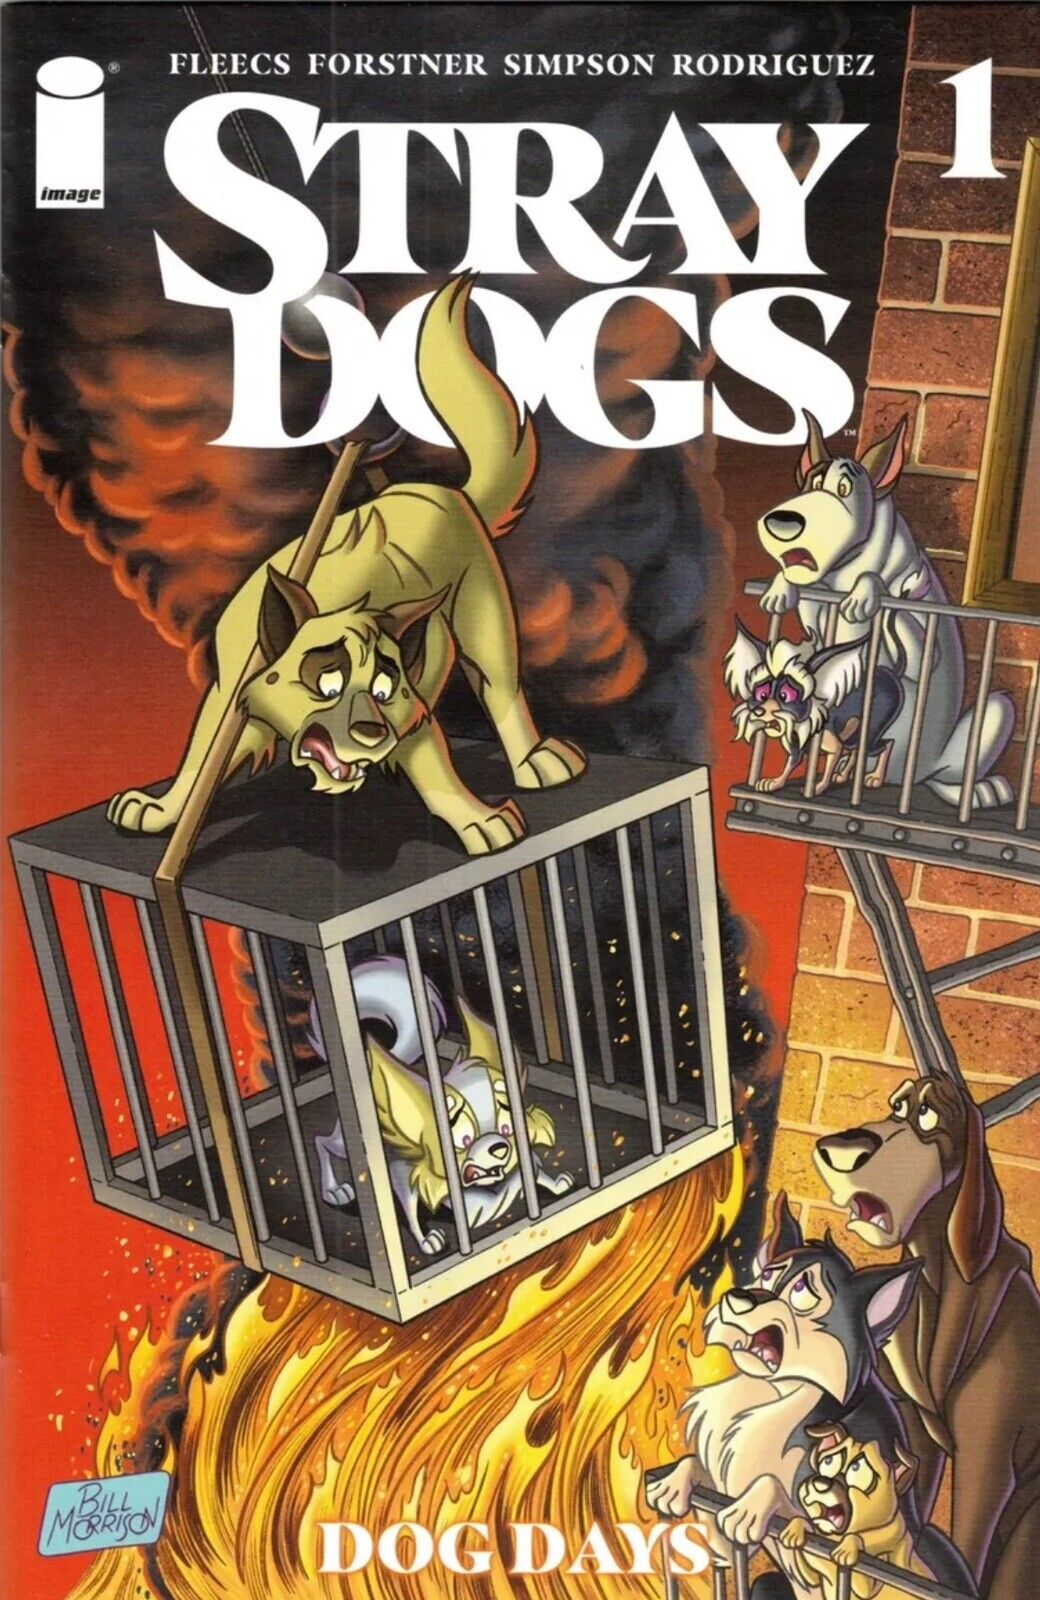 Stray Dogs Dog Days #1 1:50 Morrison Variant Fleecs & Forstner Image 2021 NM